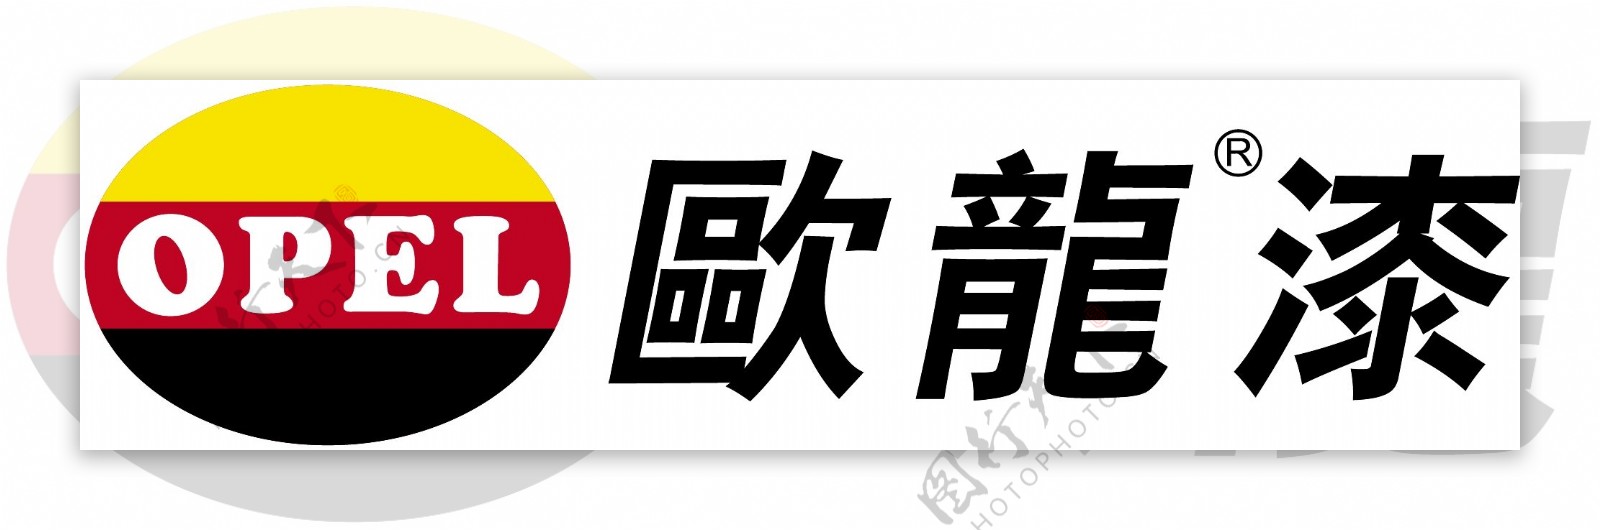 欧龙漆logo图片